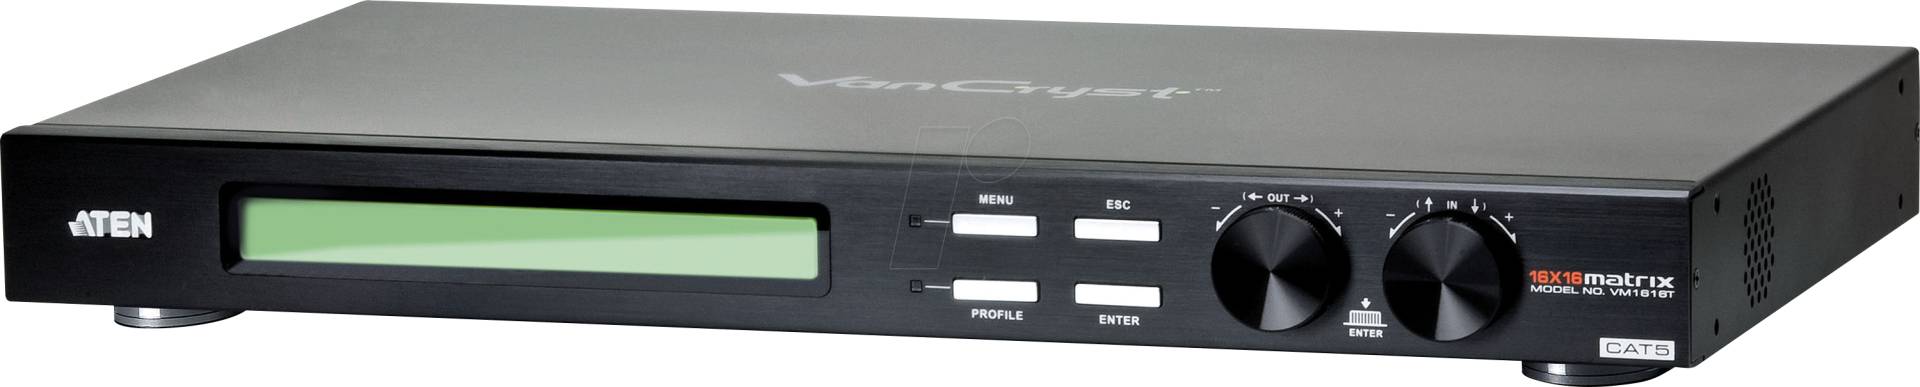 ATEN VM1616T - 16x16 VGA/Audio Matrix-Switch von Aten